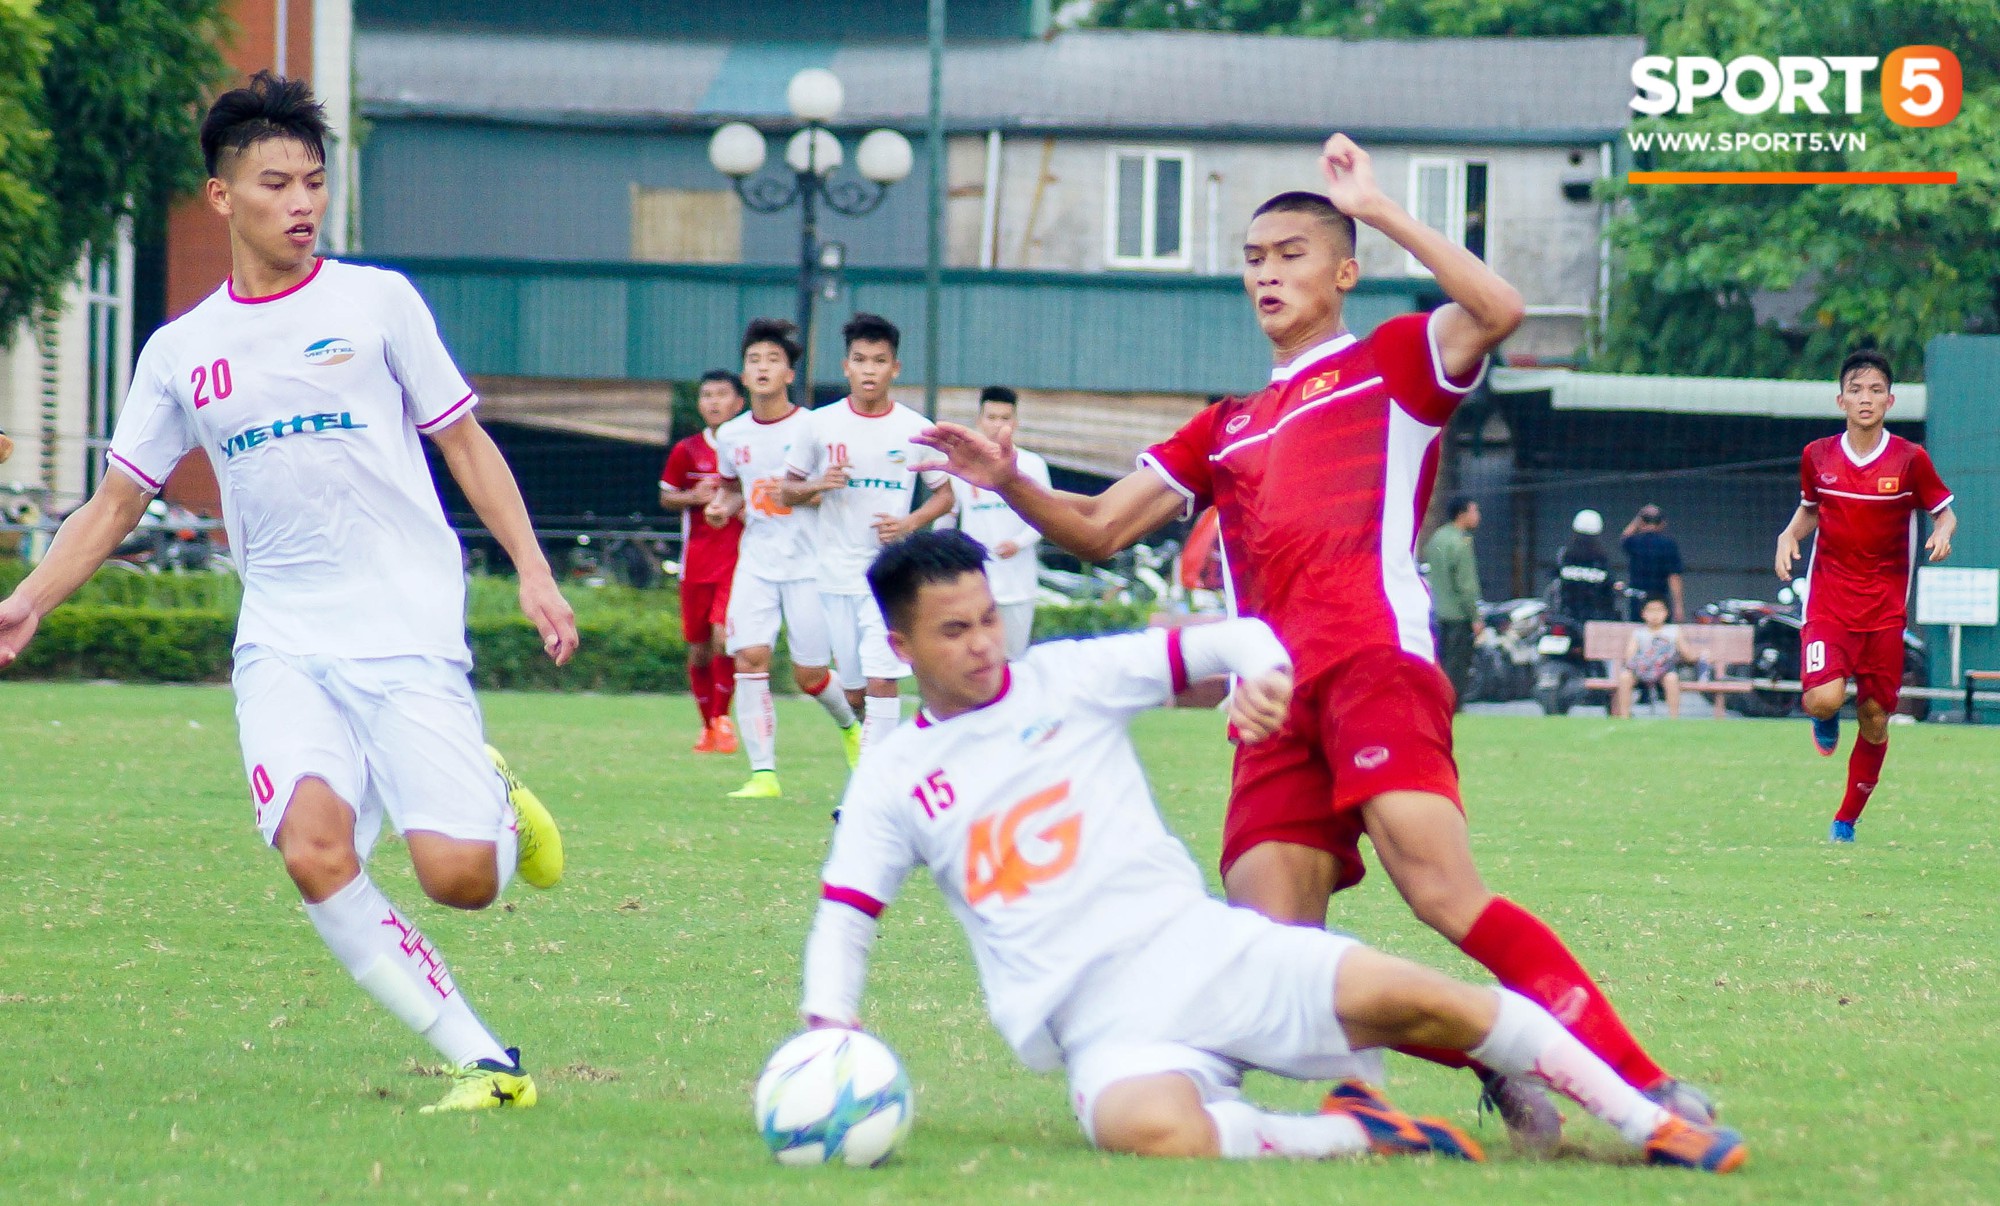 Thất bại trước đàn em của Trọng Đại, U16 Việt Nam vẫn được khen ngợi - Ảnh 2.